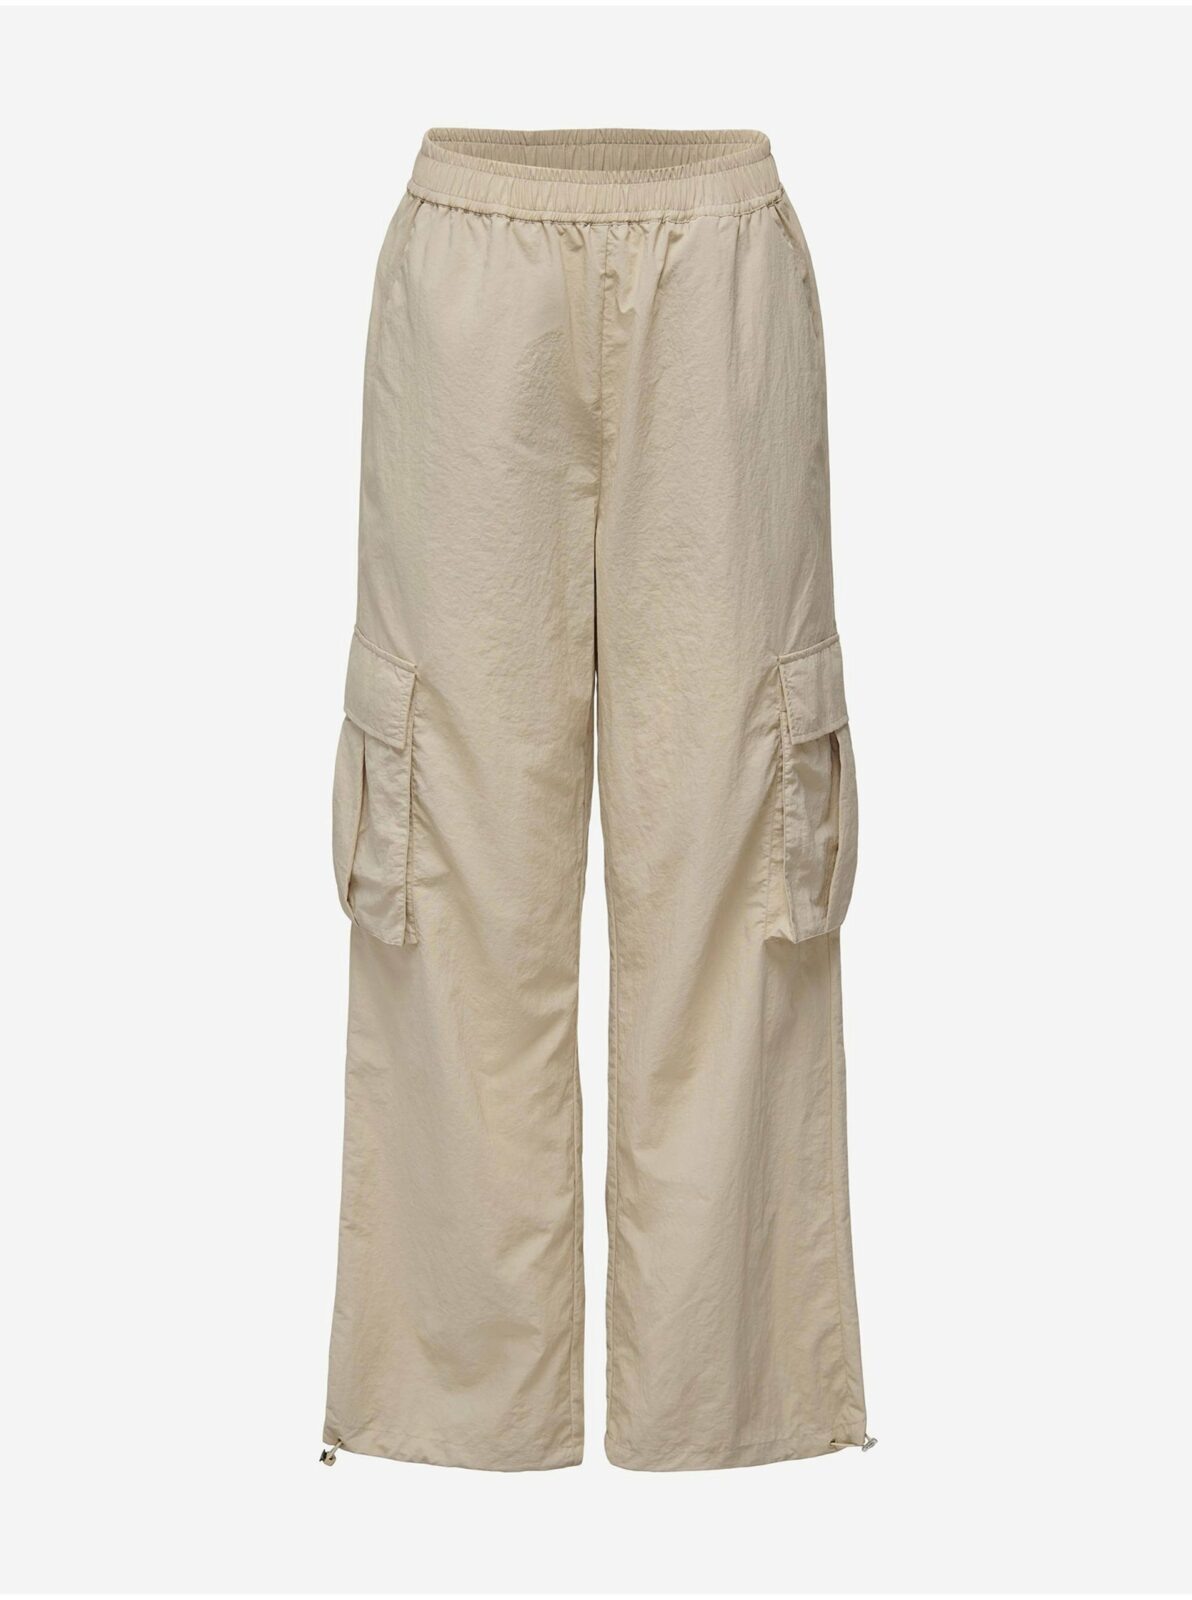 Béžové dámské šusťákové kalhoty s kapsami